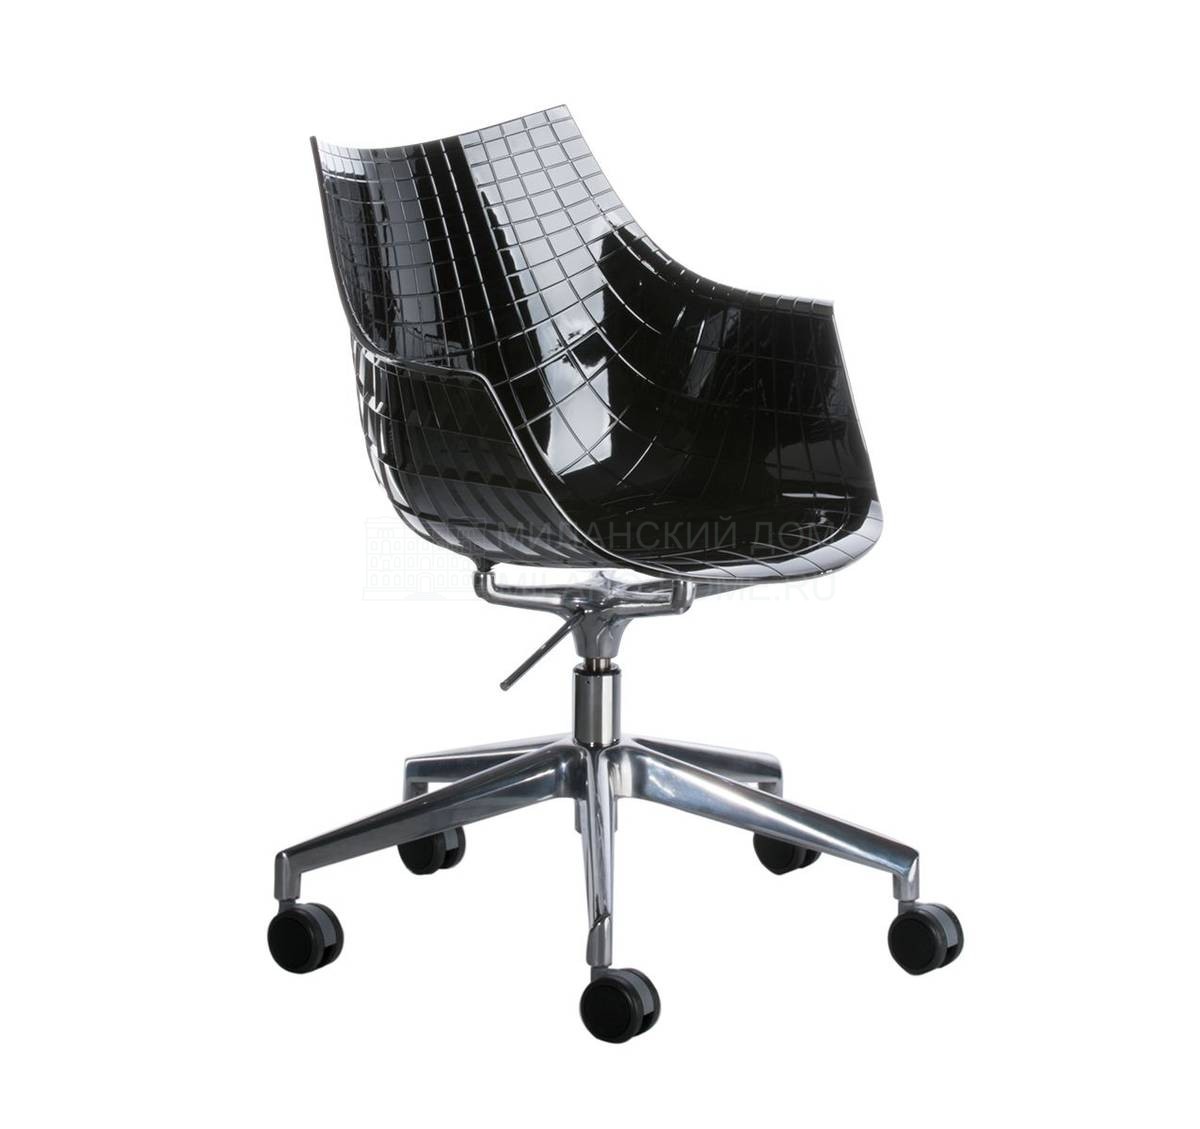 Металлический / Пластиковый стул Meridiana из Италии фабрики DRIADE